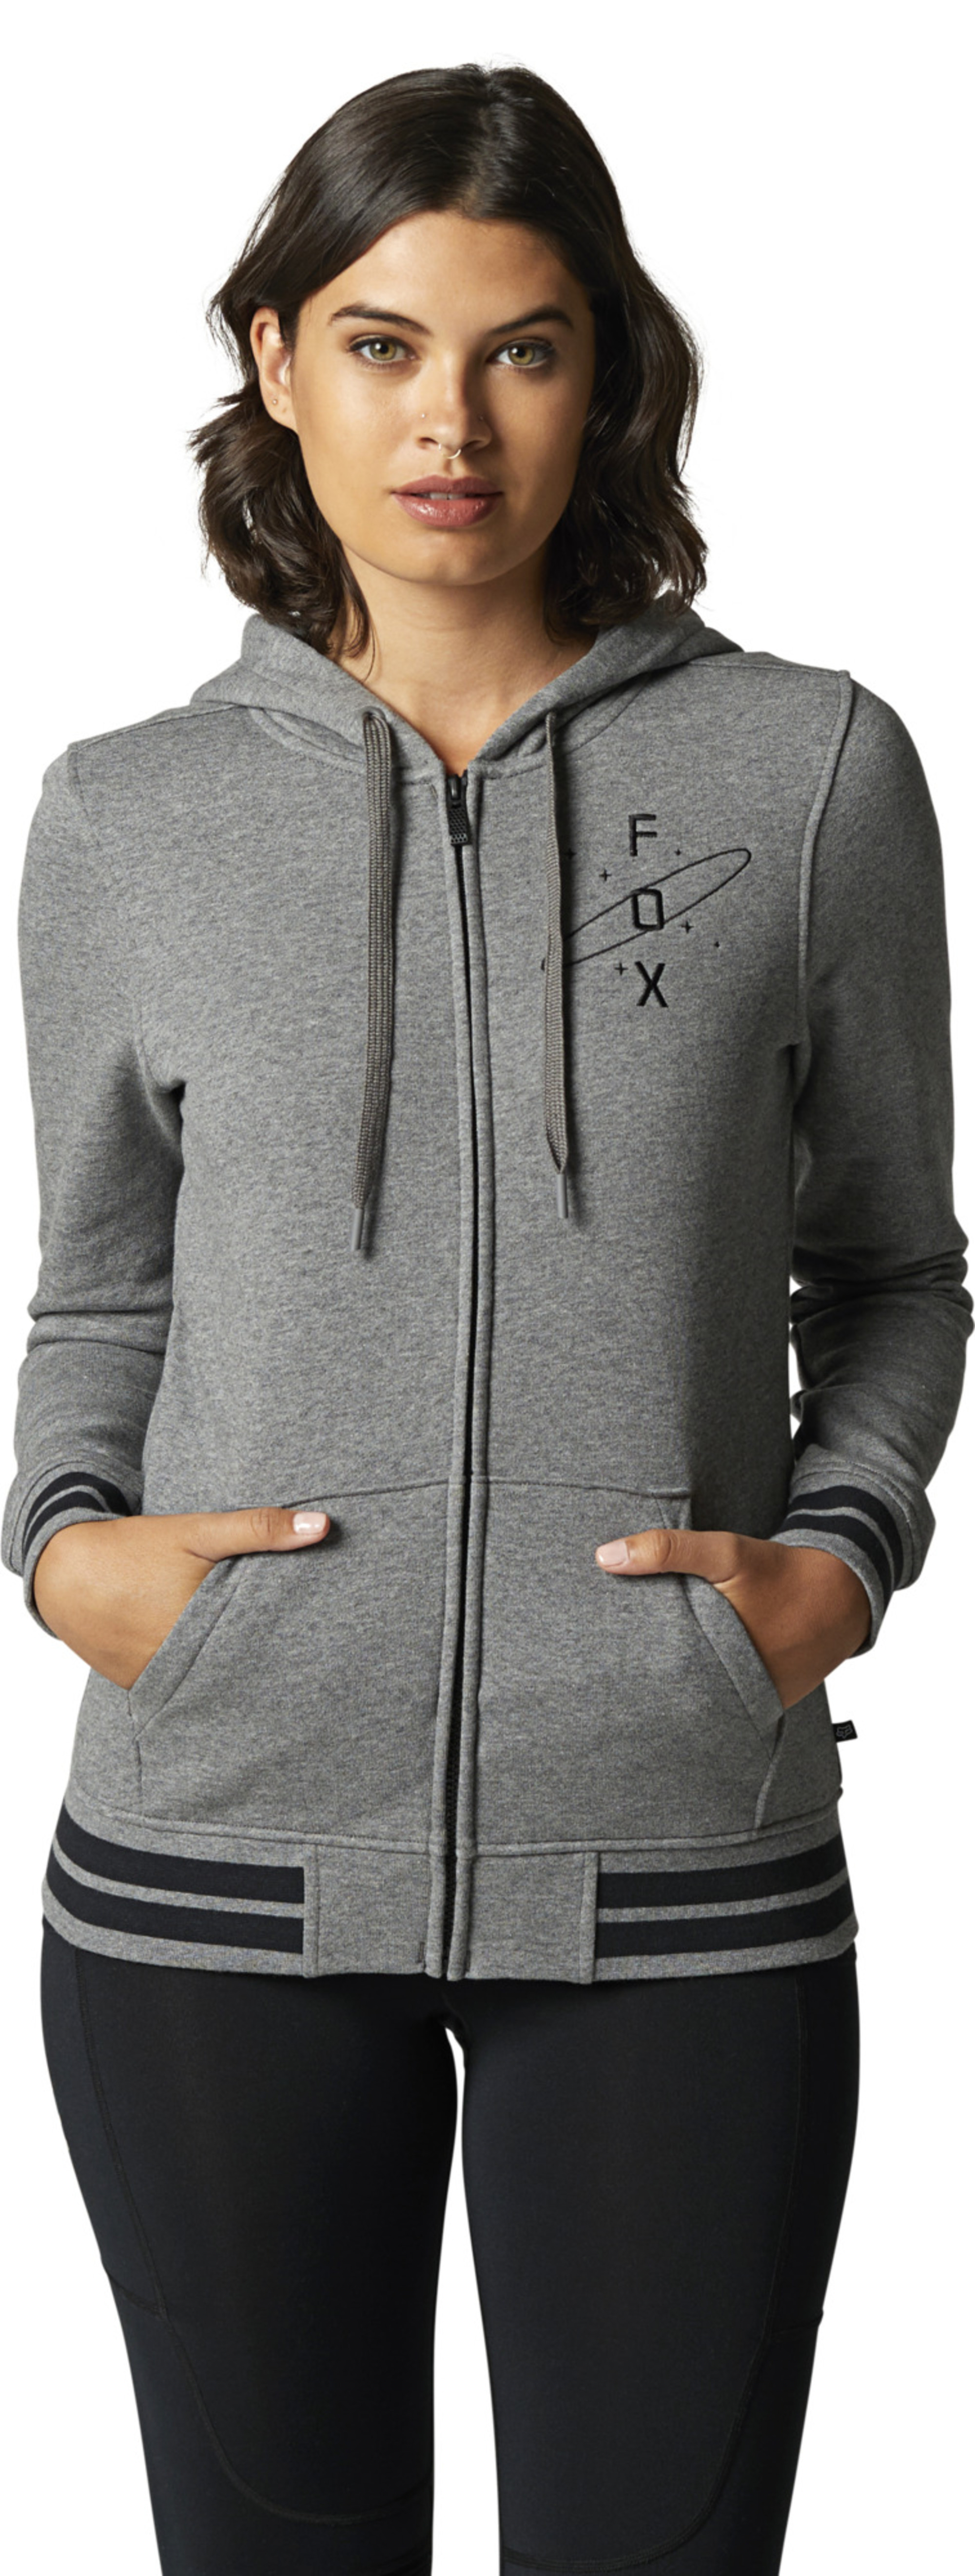 fox racing hoodies for womens orbital zip fleece